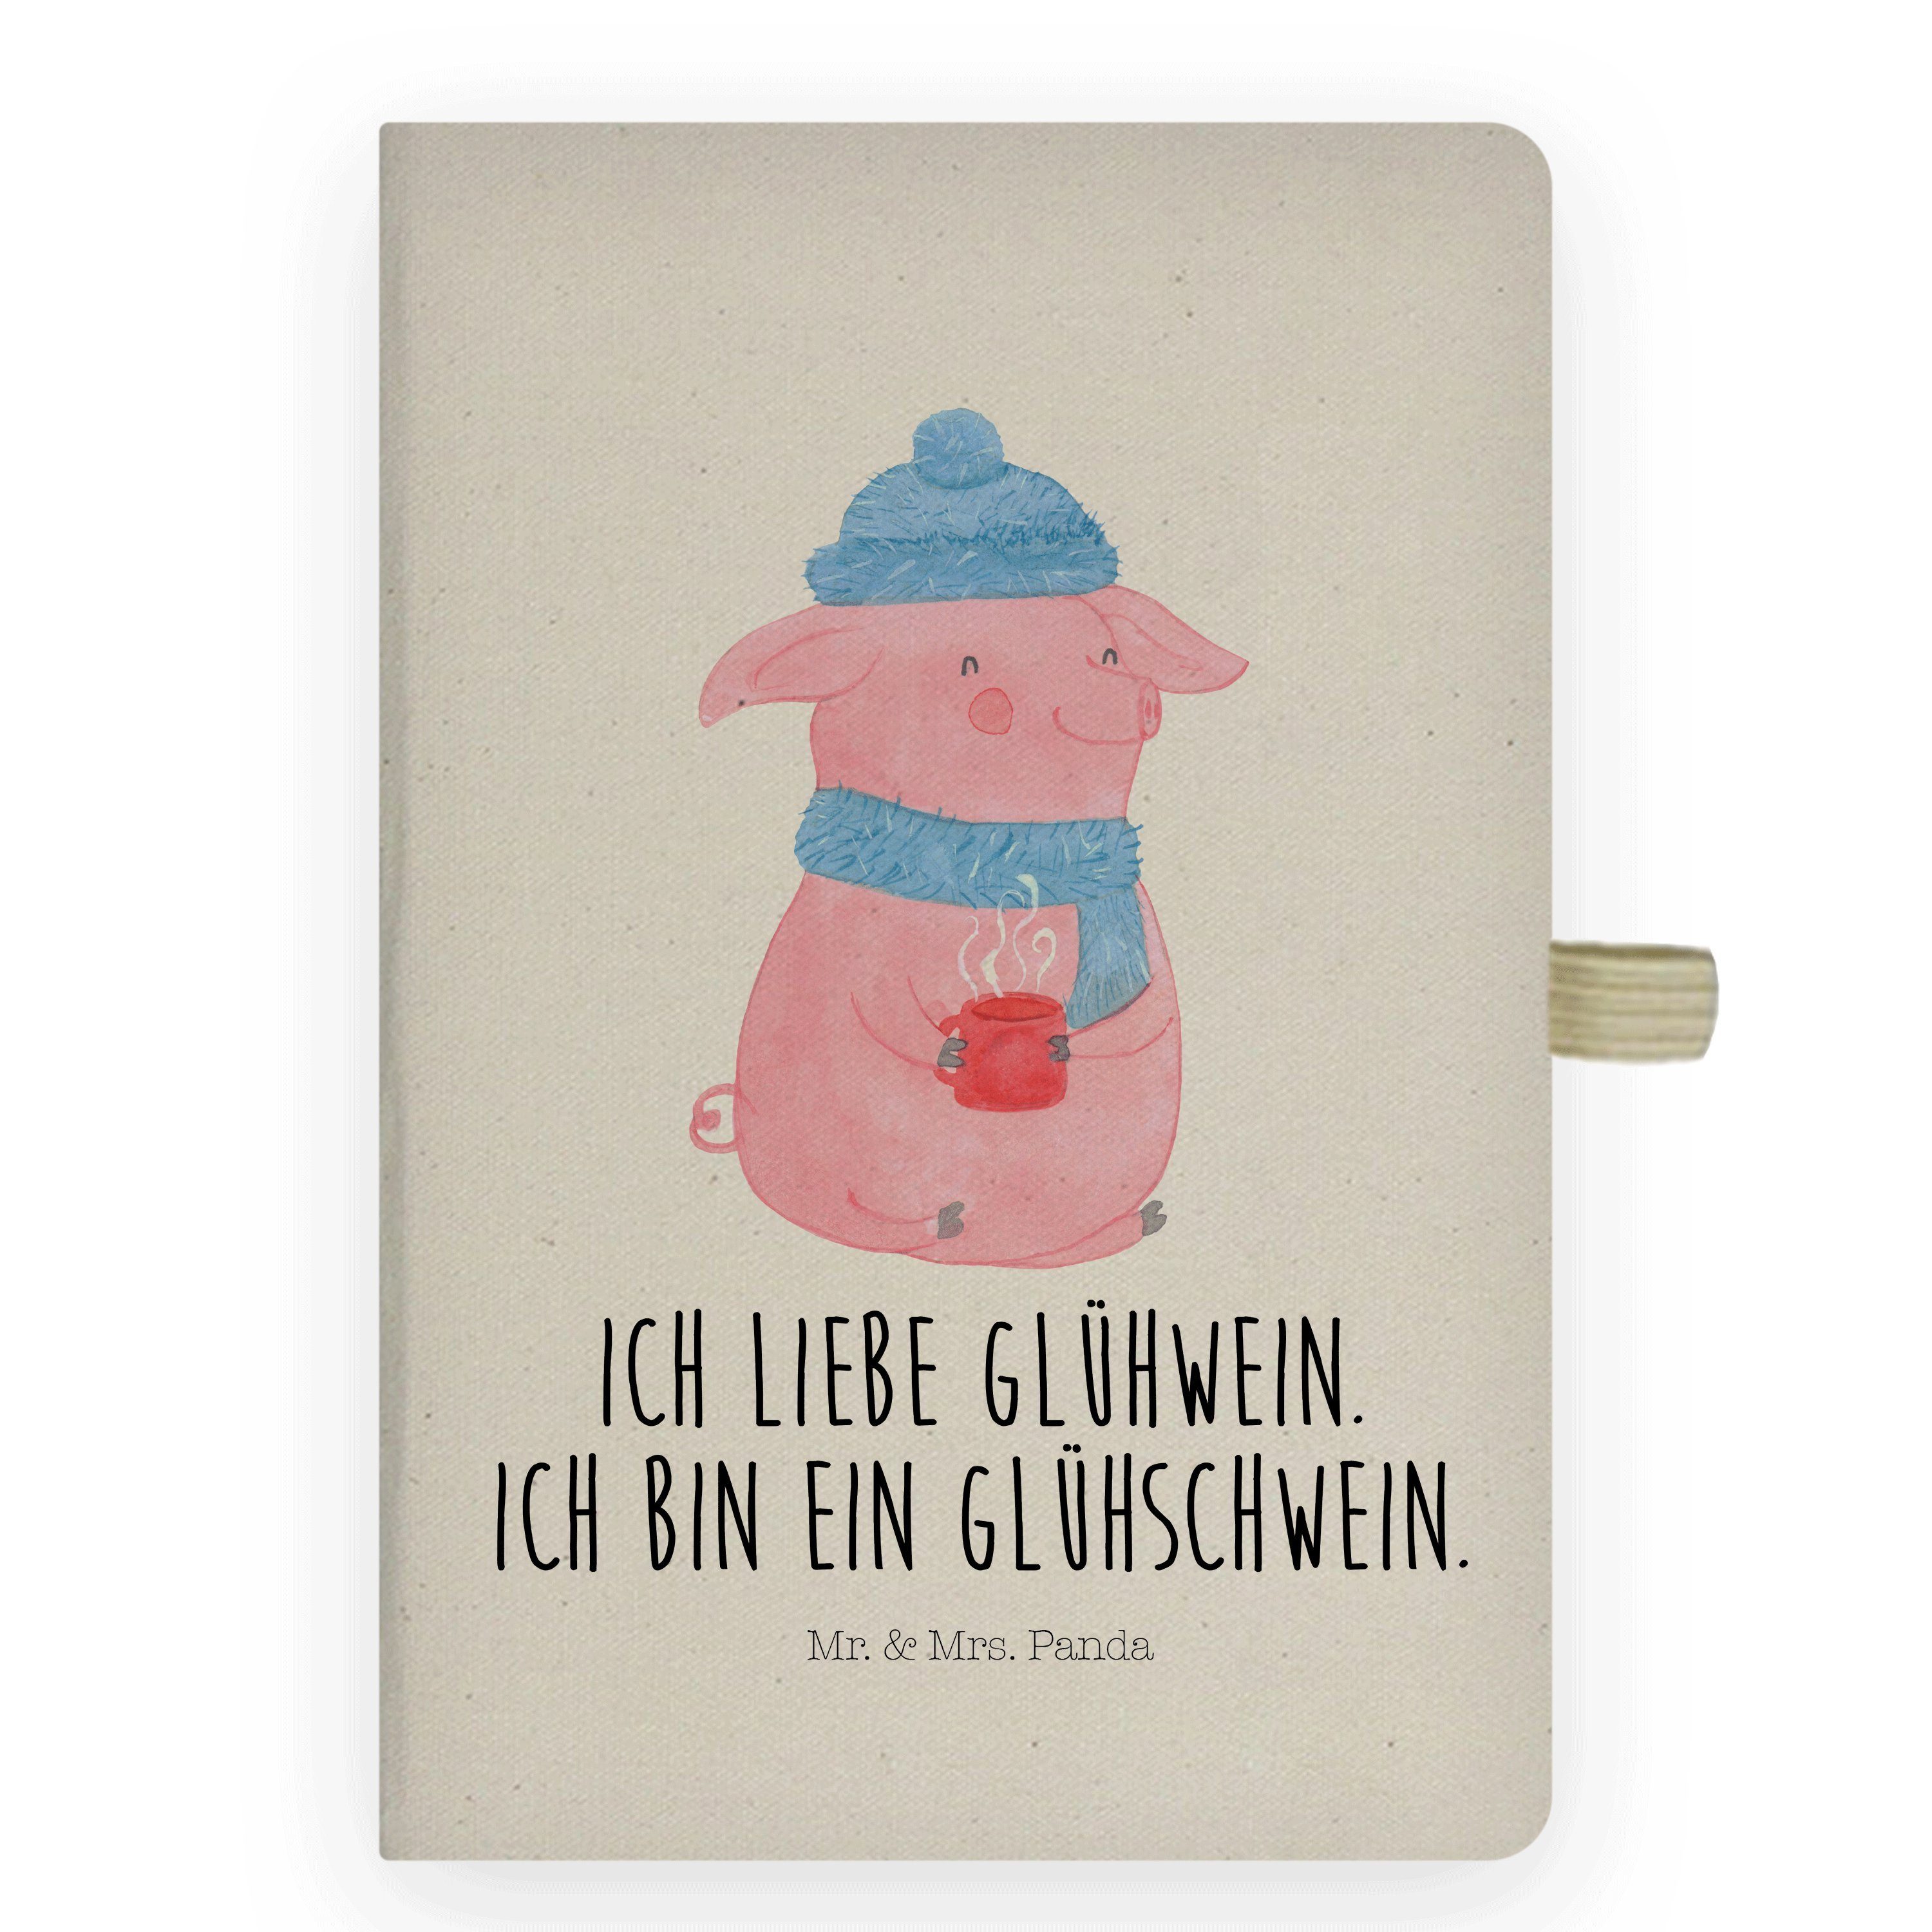 Mr. & Mrs. Panda Notizbuch Glühschwein - Transparent - Geschenk, Skizzenbuch, Notizen, Schreibbu Mr. & Mrs. Panda